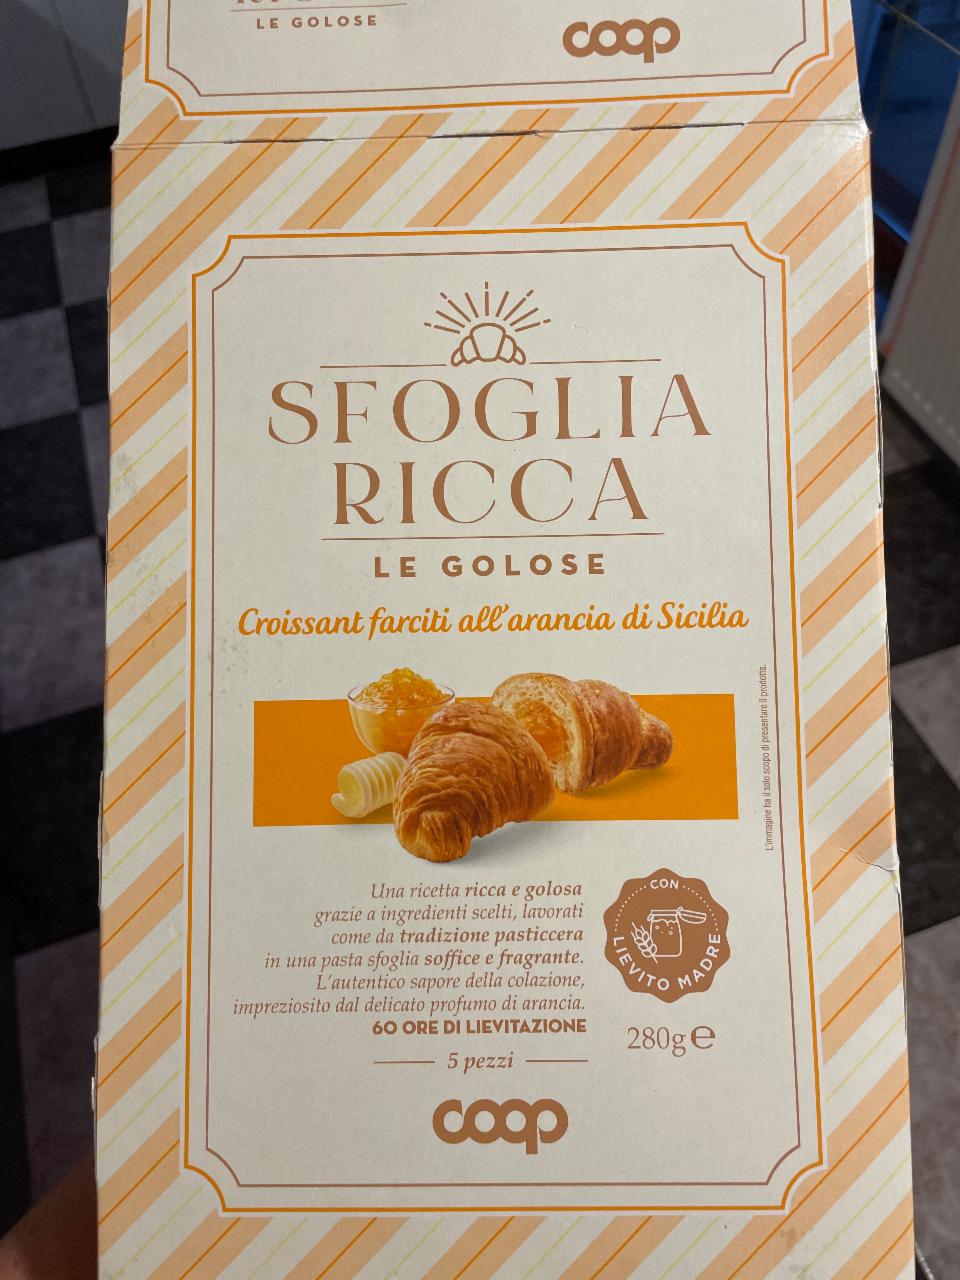 Fotografie - sfoglia Ricca Croissant farciti all'arancia di Sicilia Coop